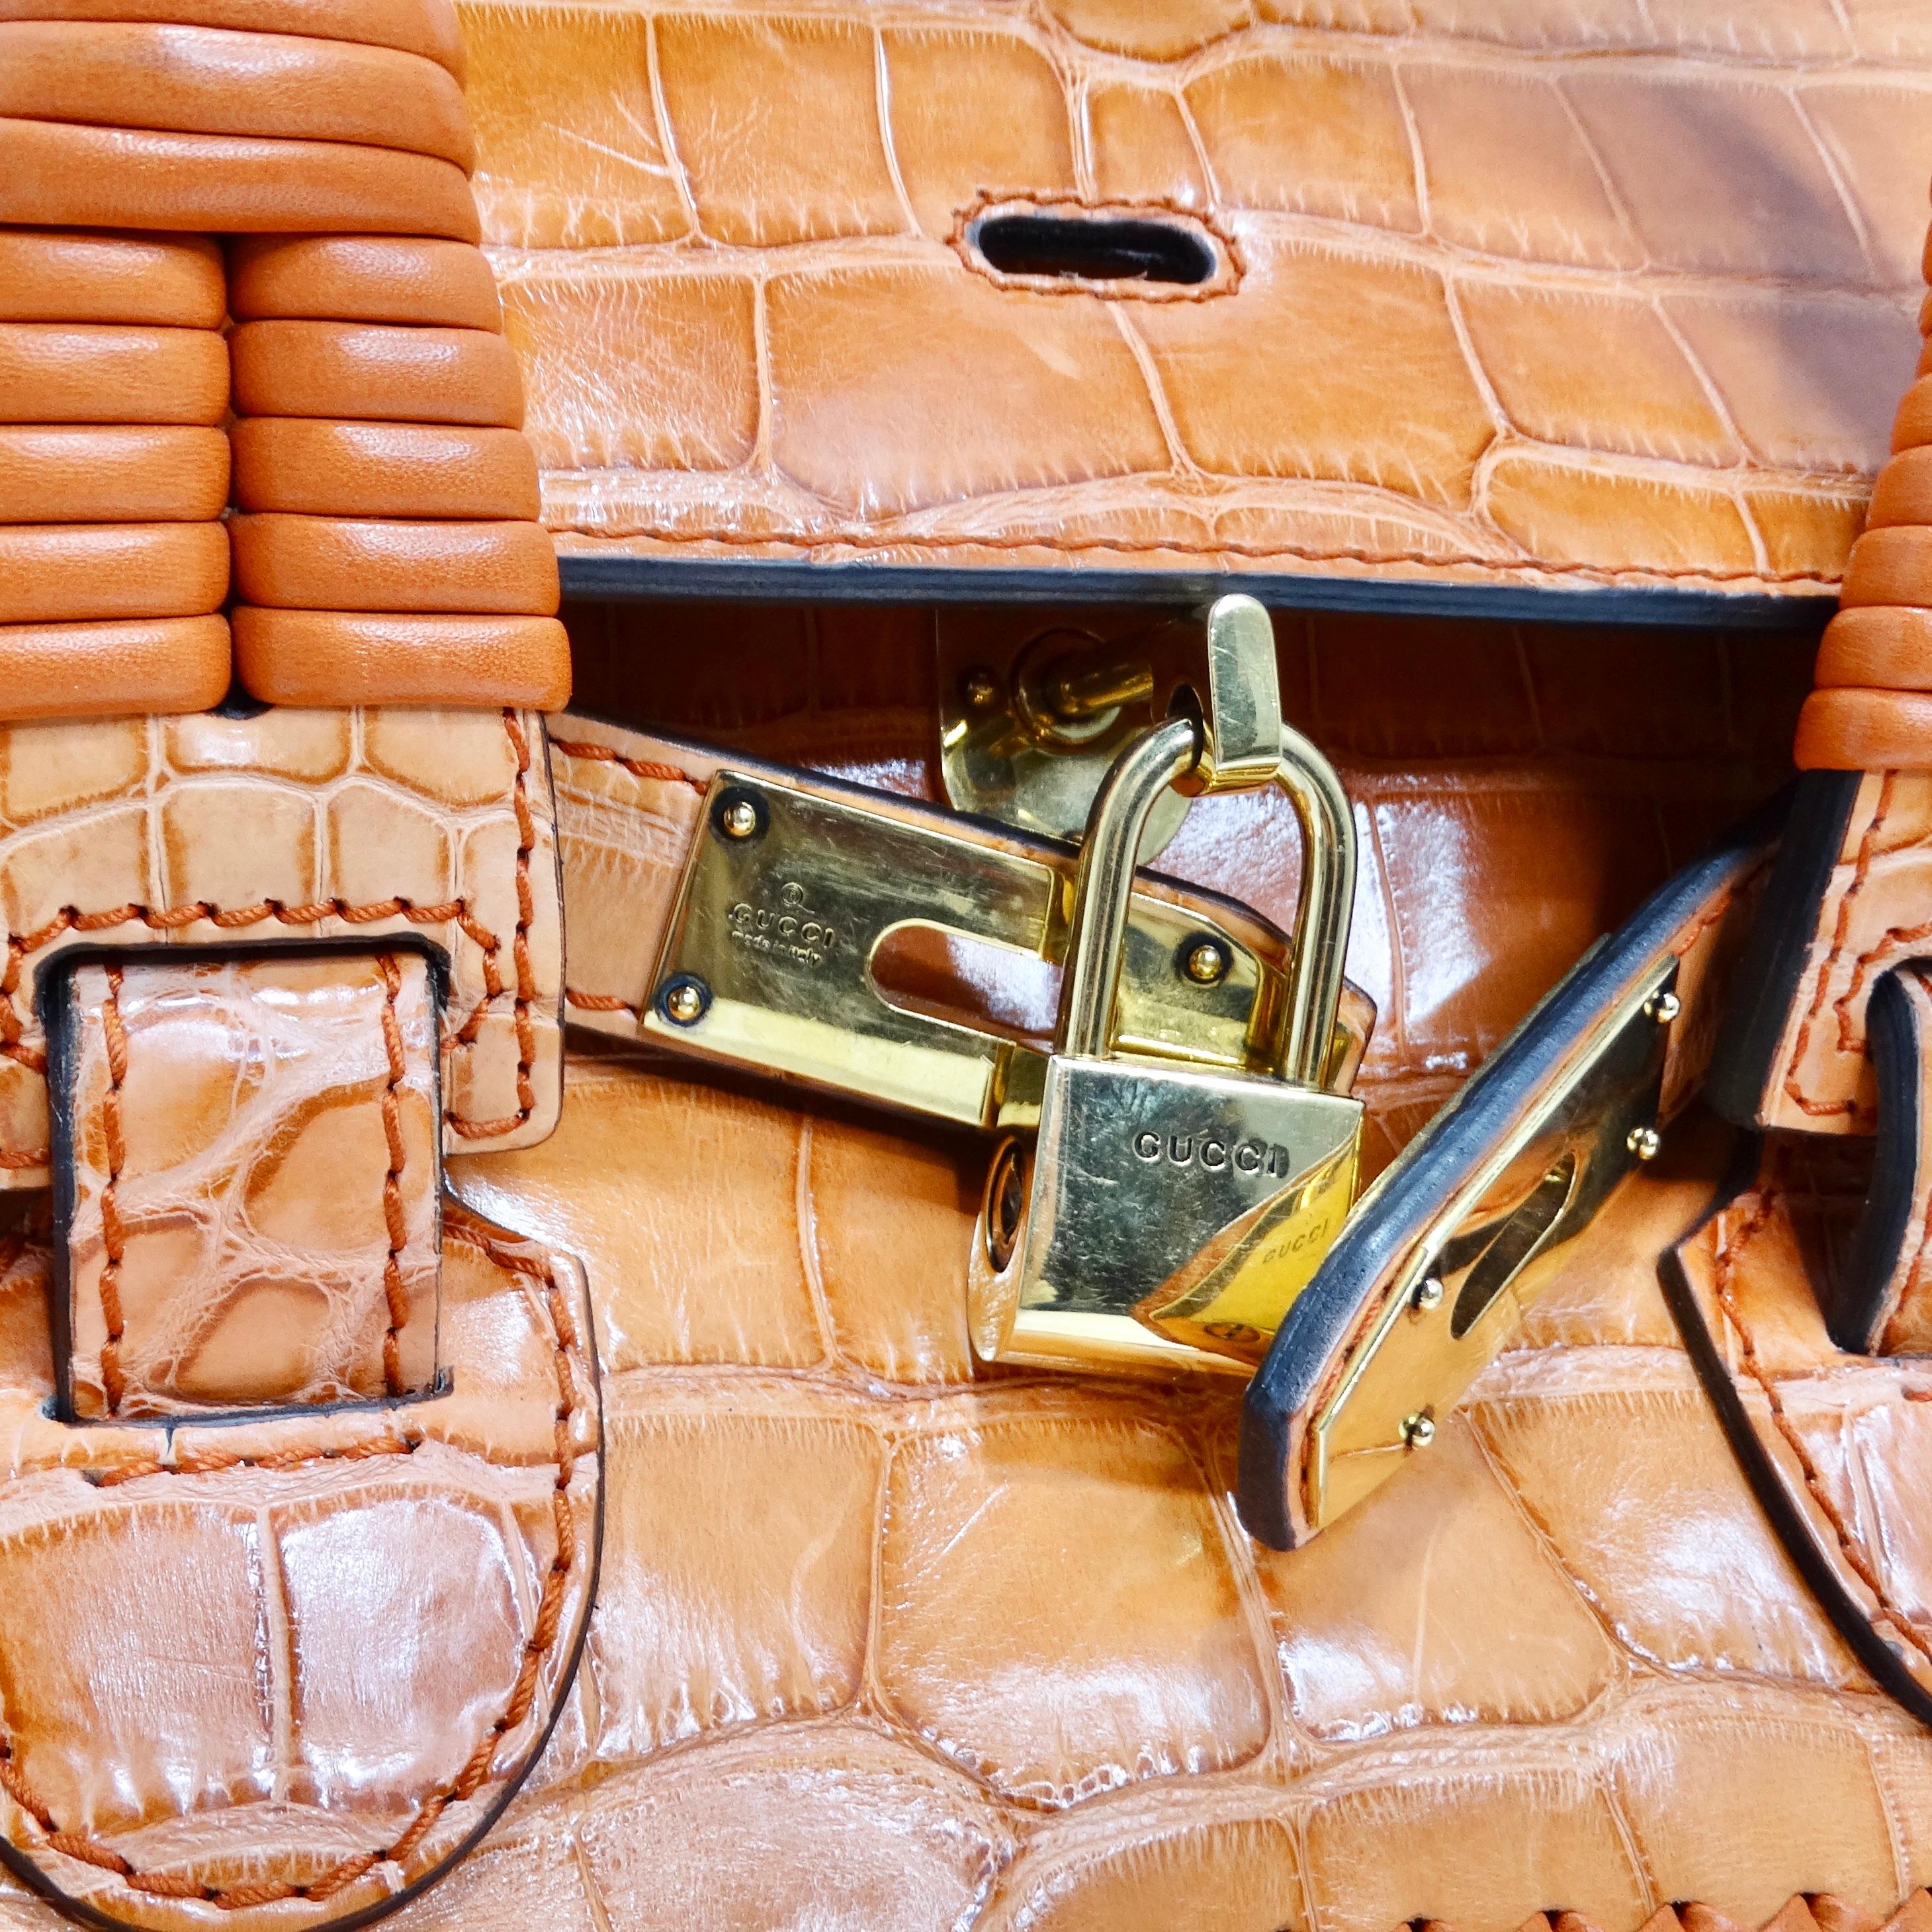 Voici le sac à main Gucci Rare Orange Crocodile Leather Woven Top Handle, une pièce étonnante et exclusive qui respire le luxe et la sophistication. Confectionné en cuir de crocodile orange, cet élégant fourre-tout est orné de détails artisanaux